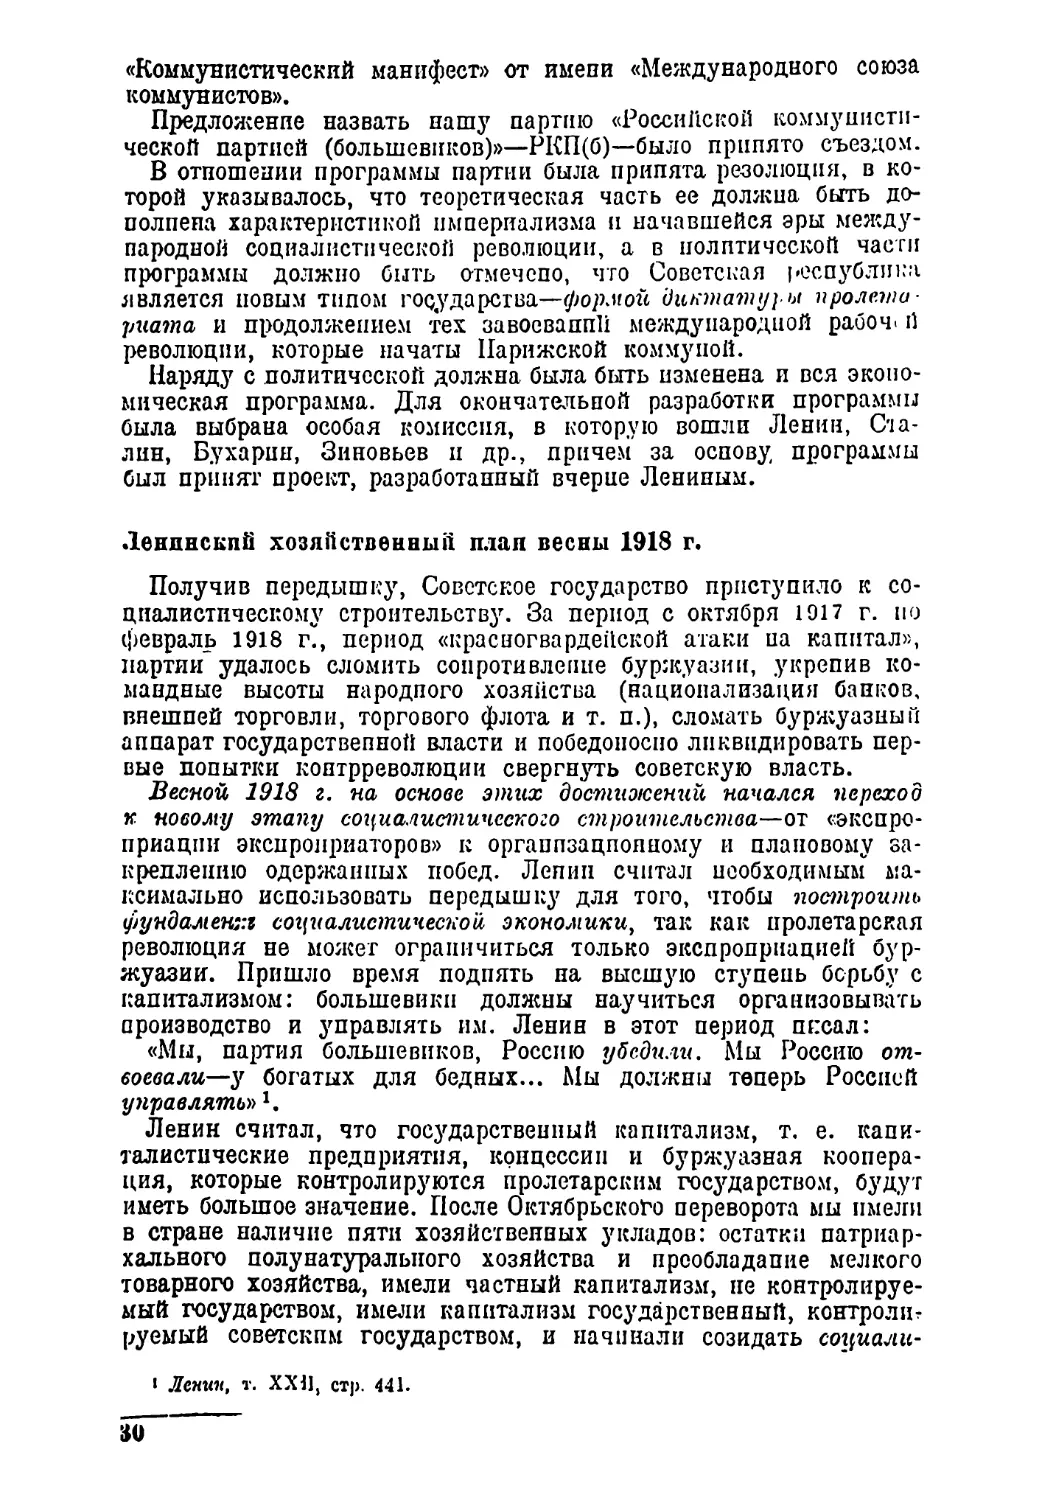 Ленинский хозяйственный план весны 1918 г.